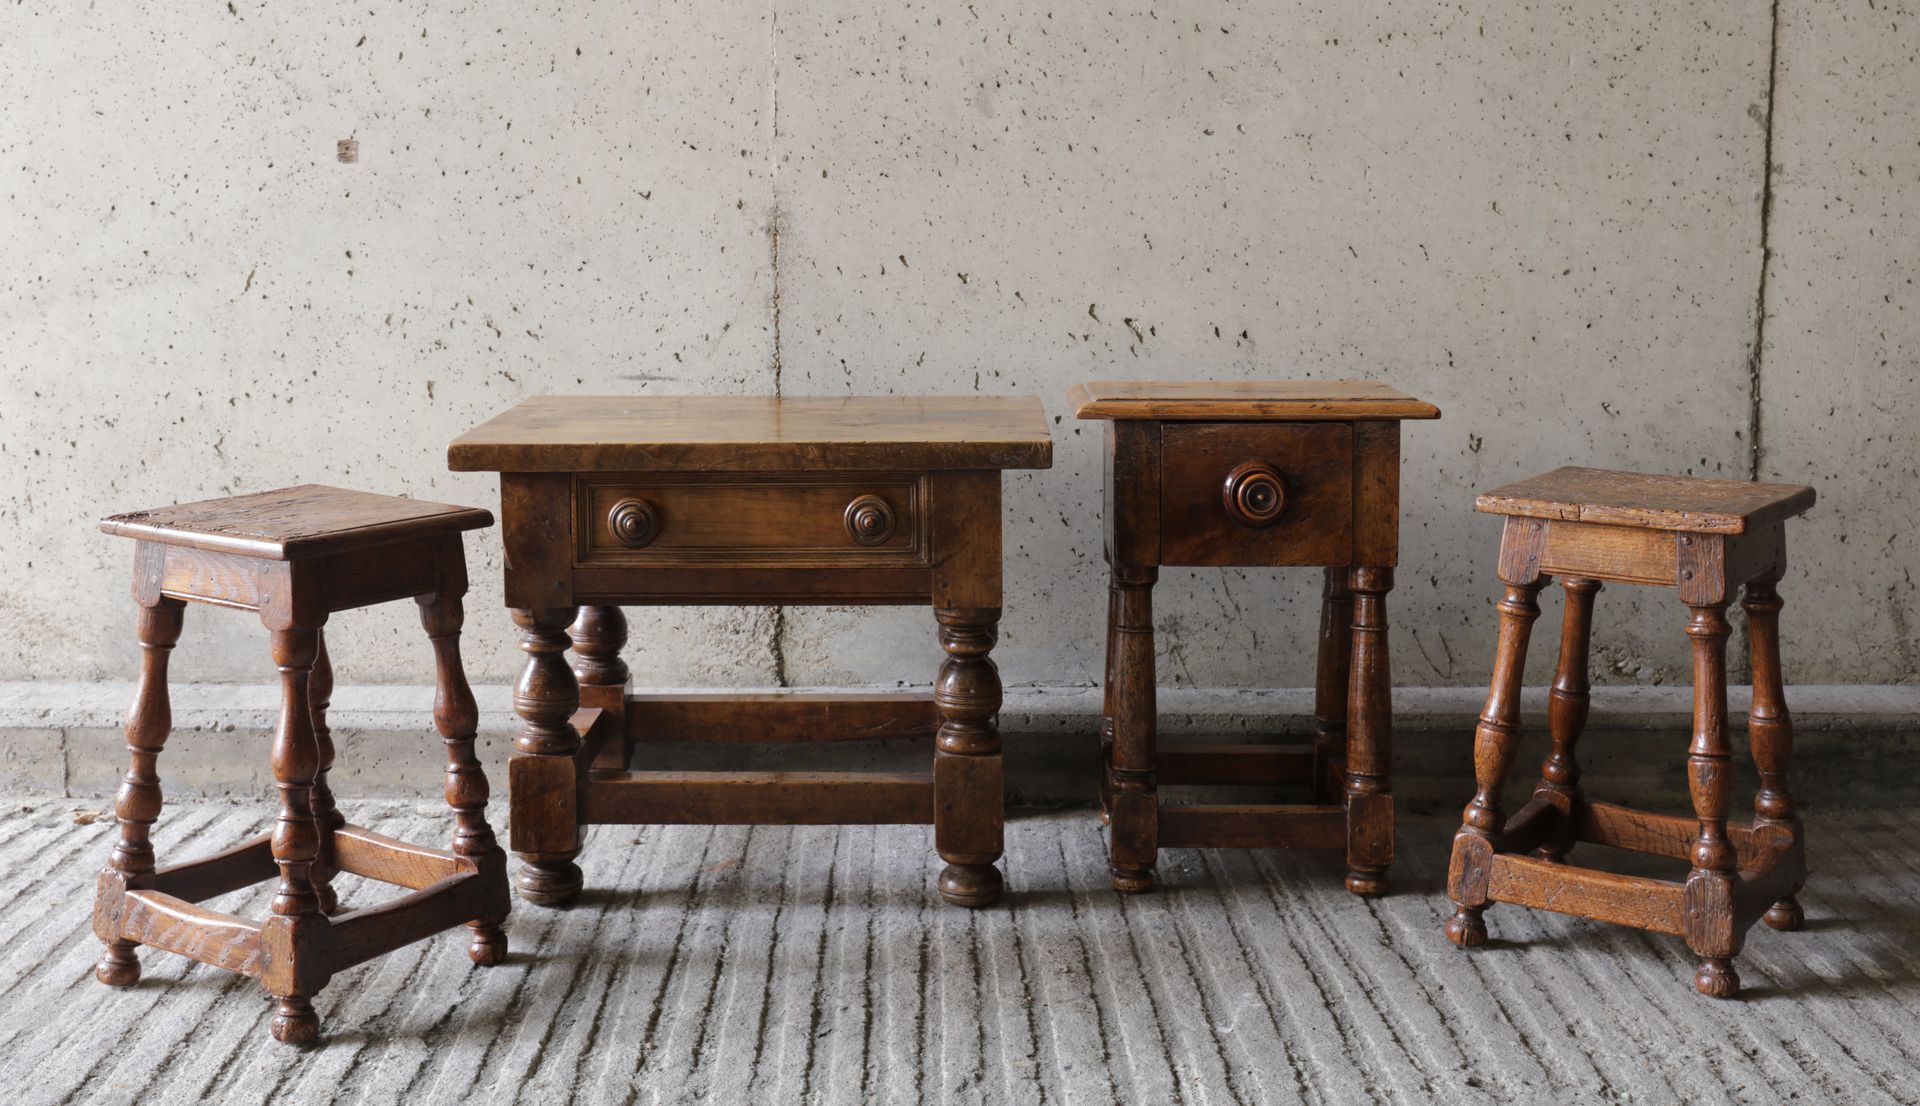 VARIA 一批小家具（4件）。一对凳子和两个边桌
Lot van kleine meubelen (4stuks).几把刷子和两把刷子
 各个厘米